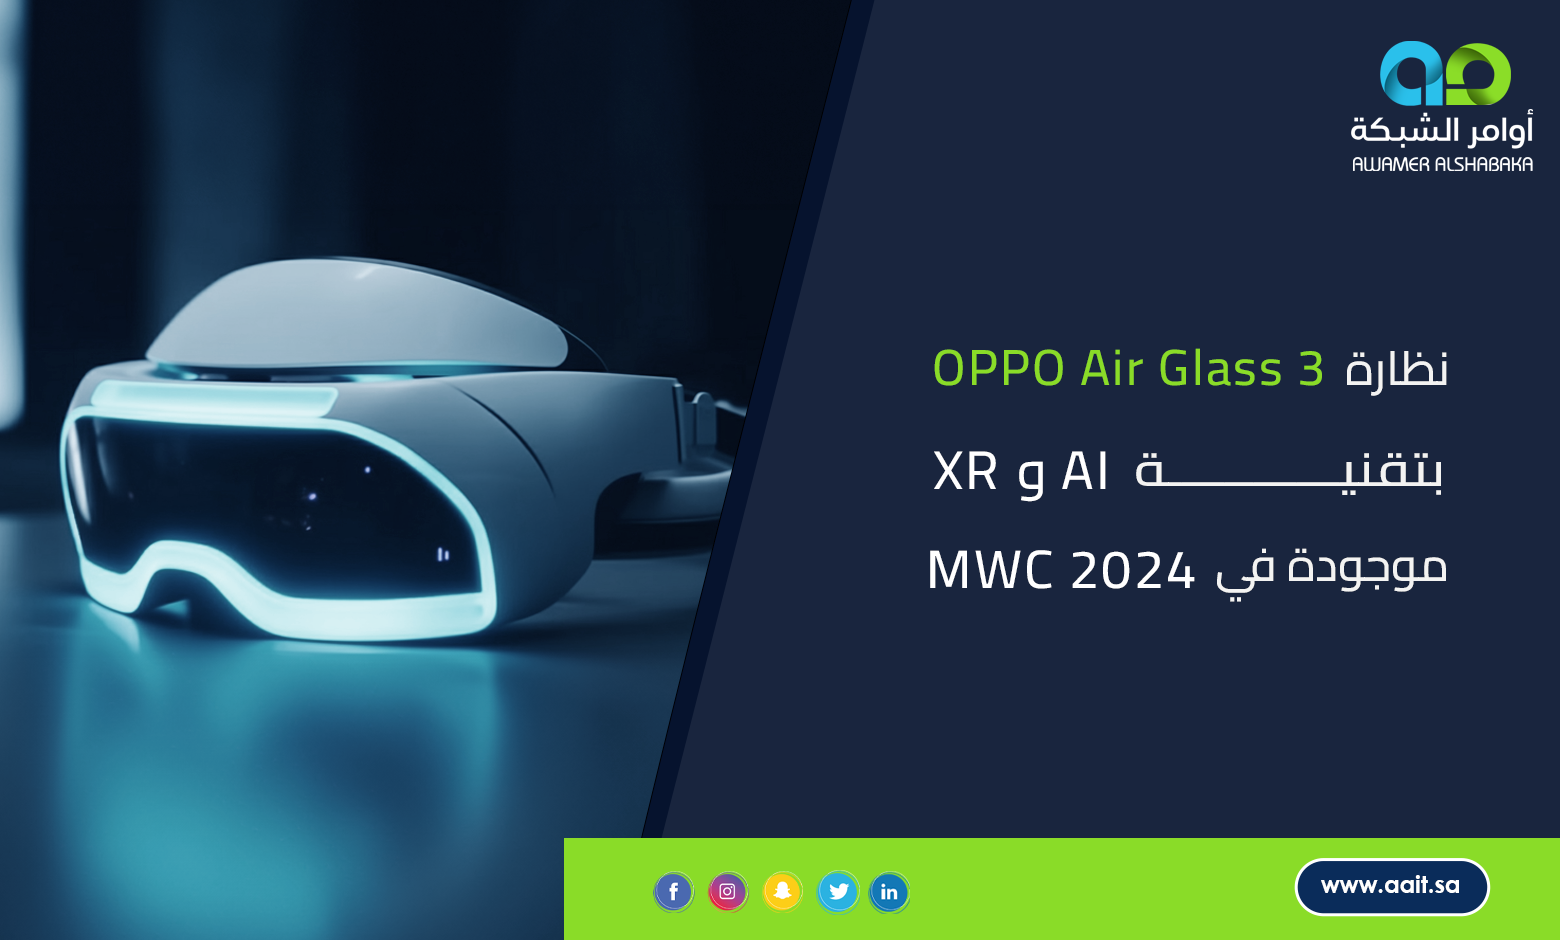 نظارة OPPO Air Glass 3